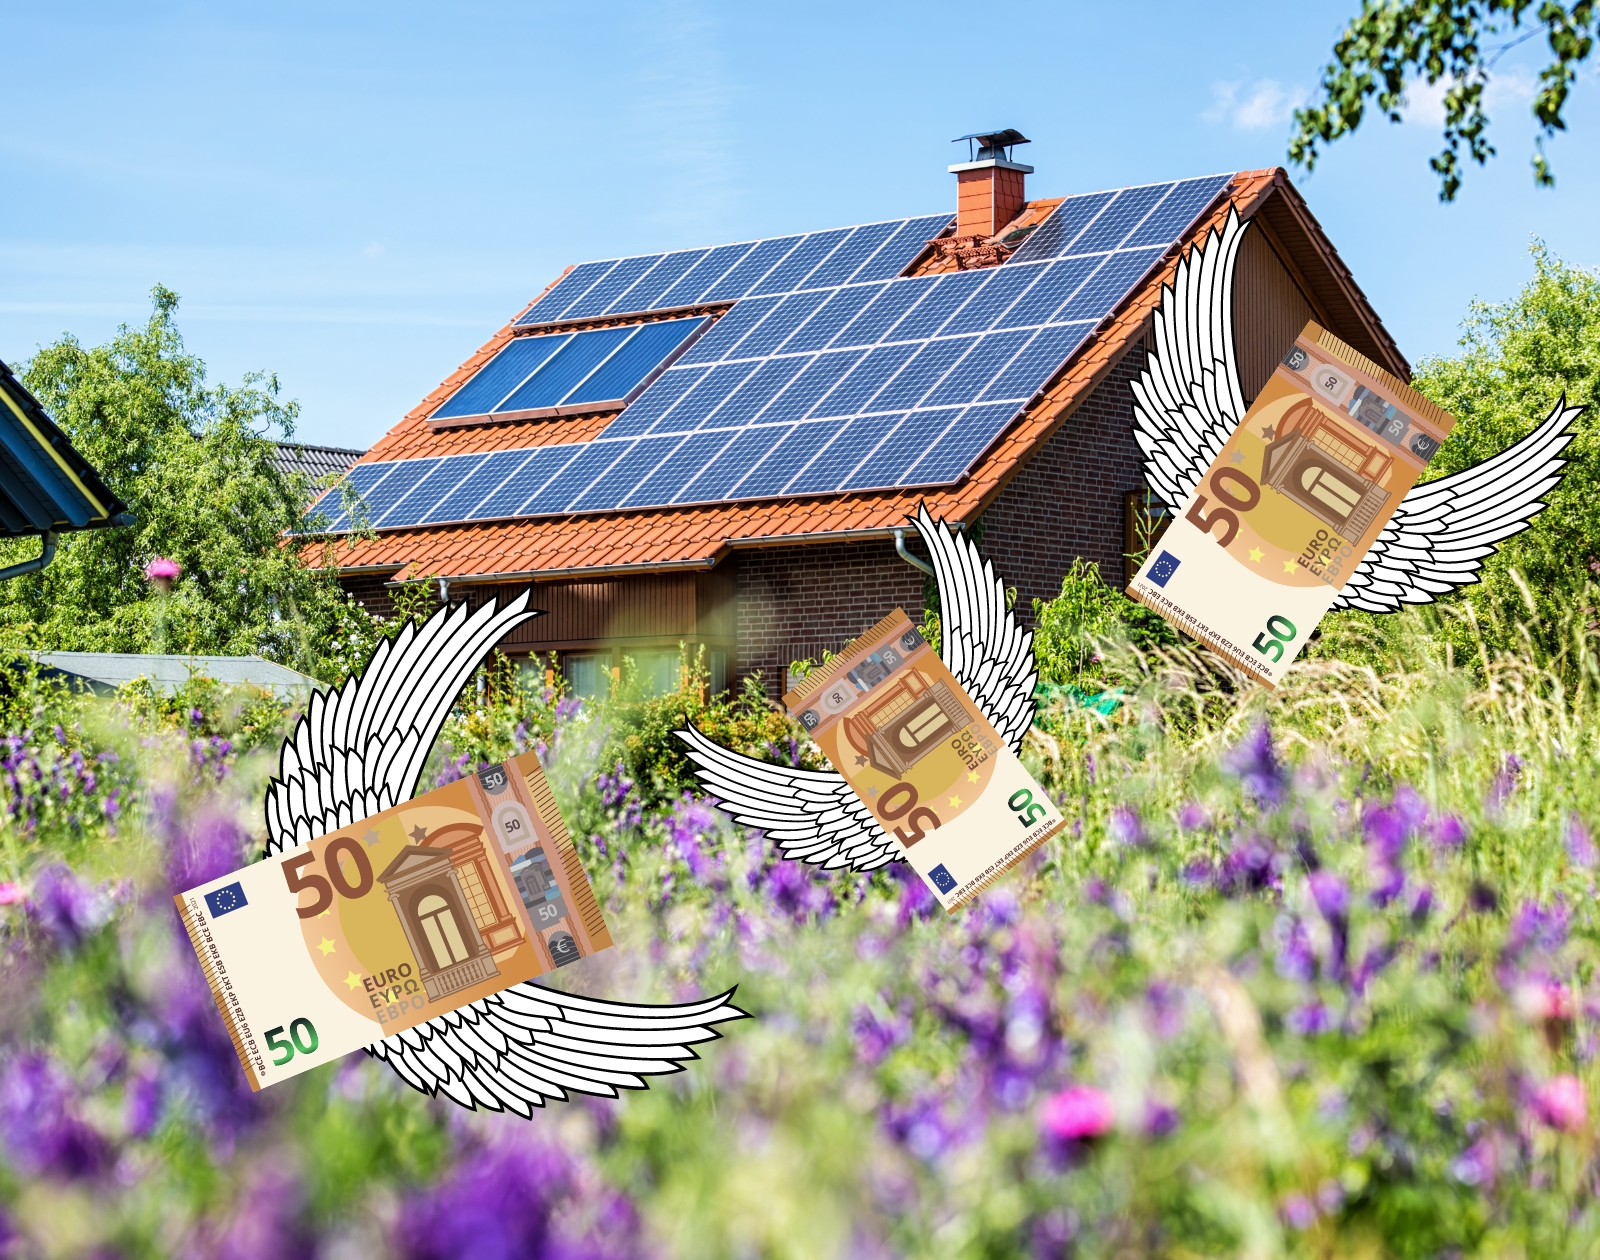 Ce nouveau panneau solaire veut chauffer gratuitement votre maison